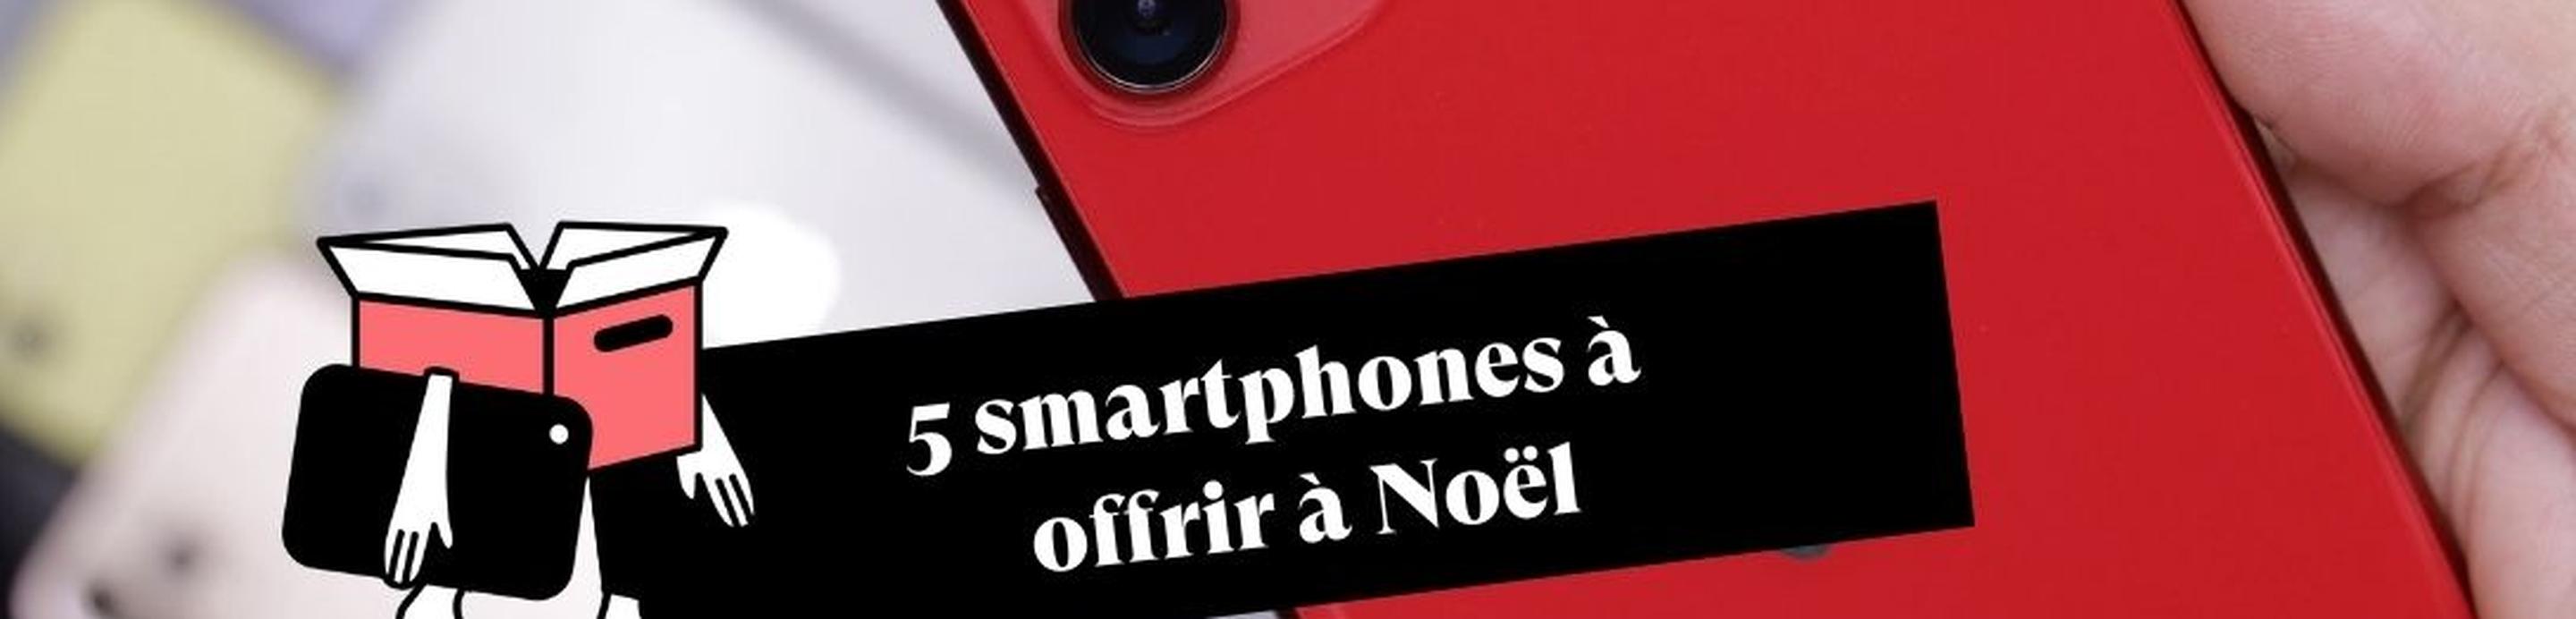 offrir-smartphone-noel